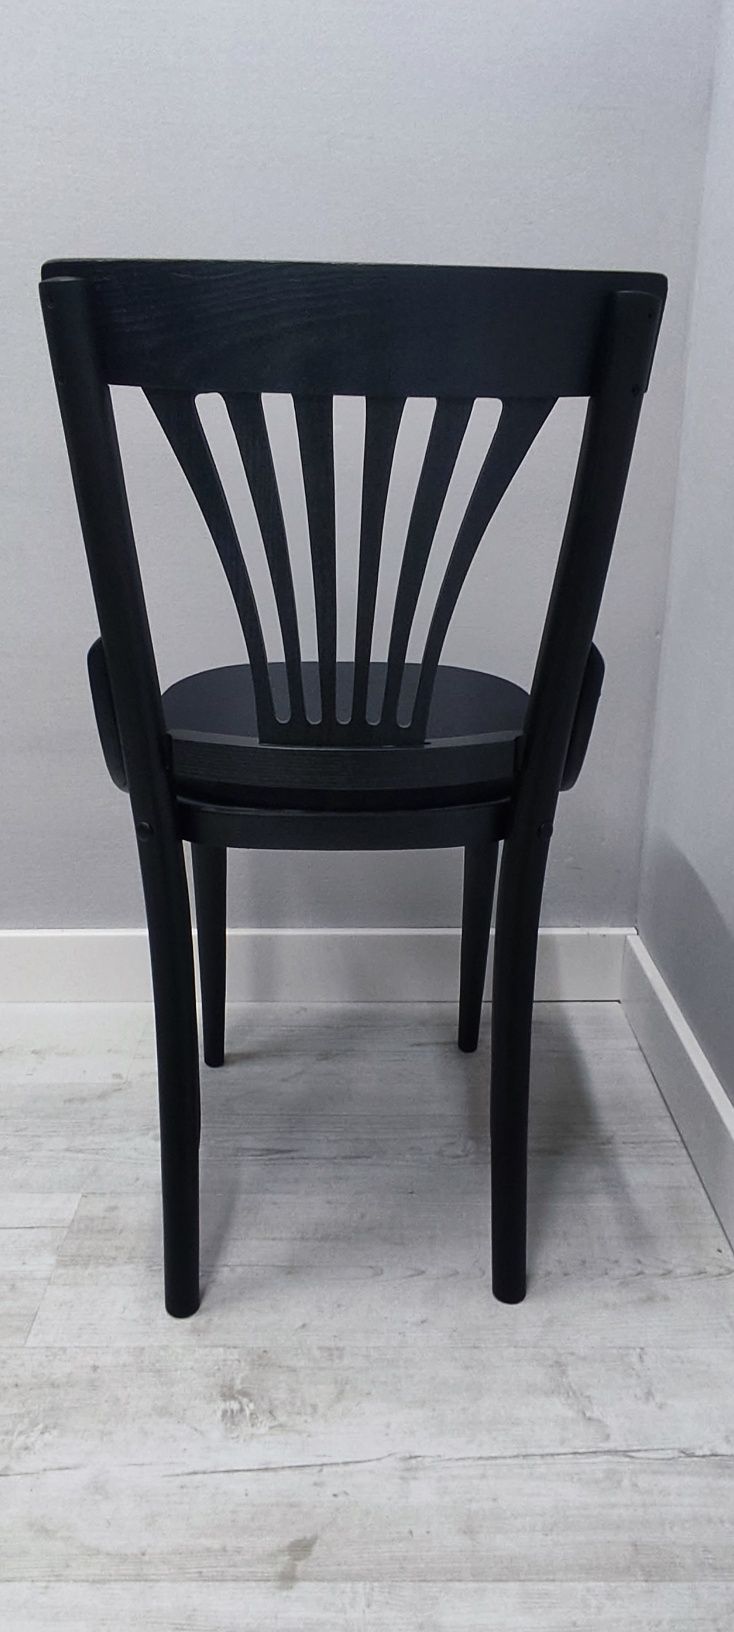 Krzesło czarne drewniane.Thonet Wachlarz 50 szt